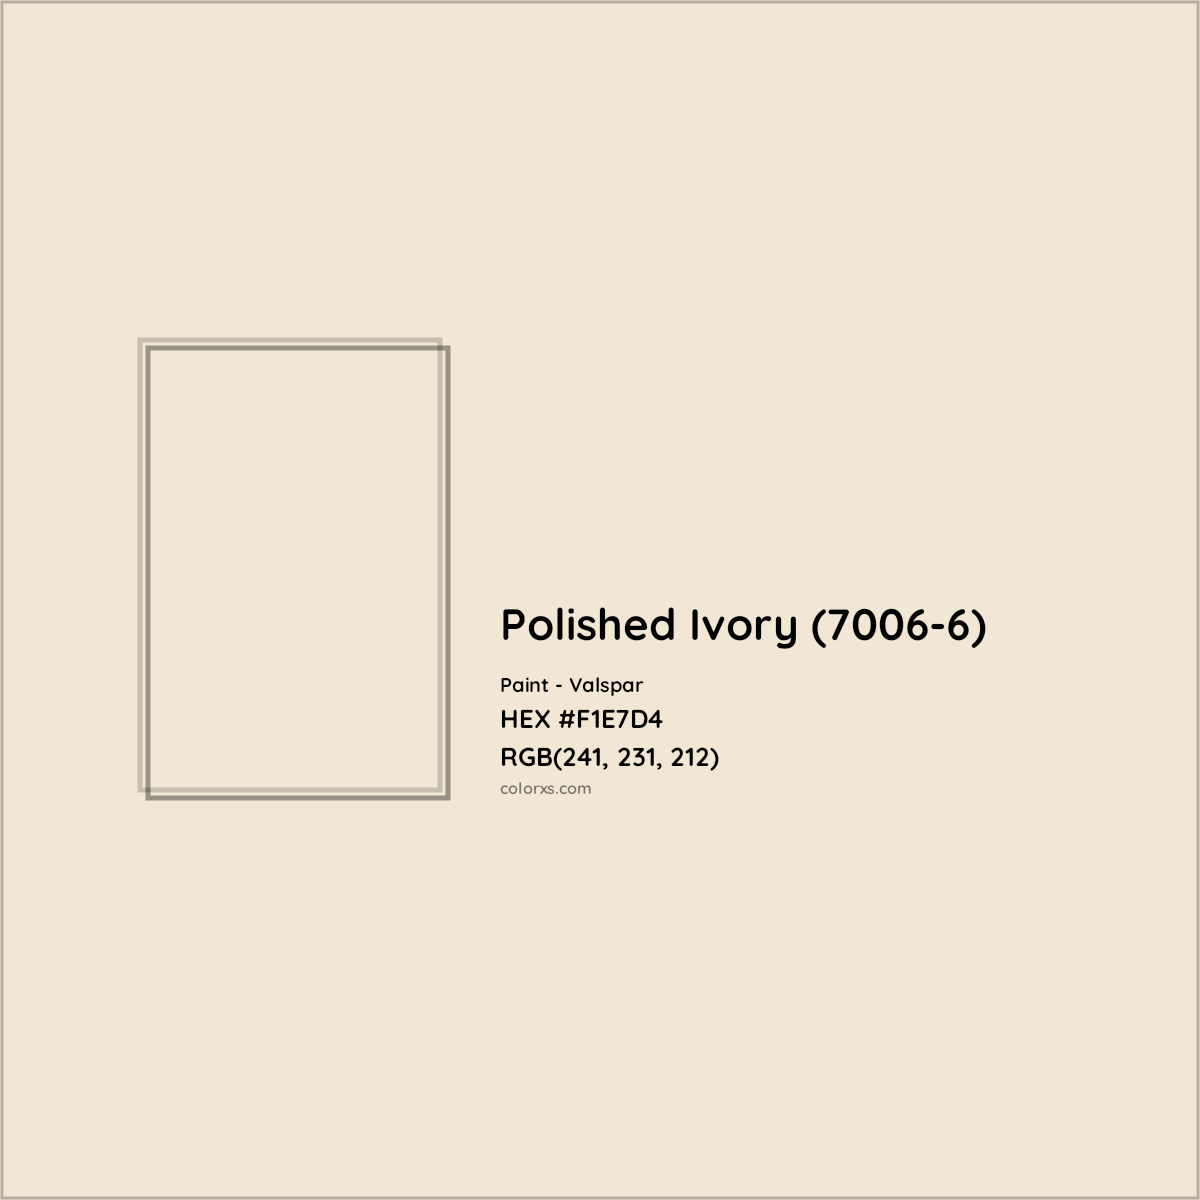 HEX #F1E7D4 Polished Ivory (7006-6) Paint Valspar - Color Code